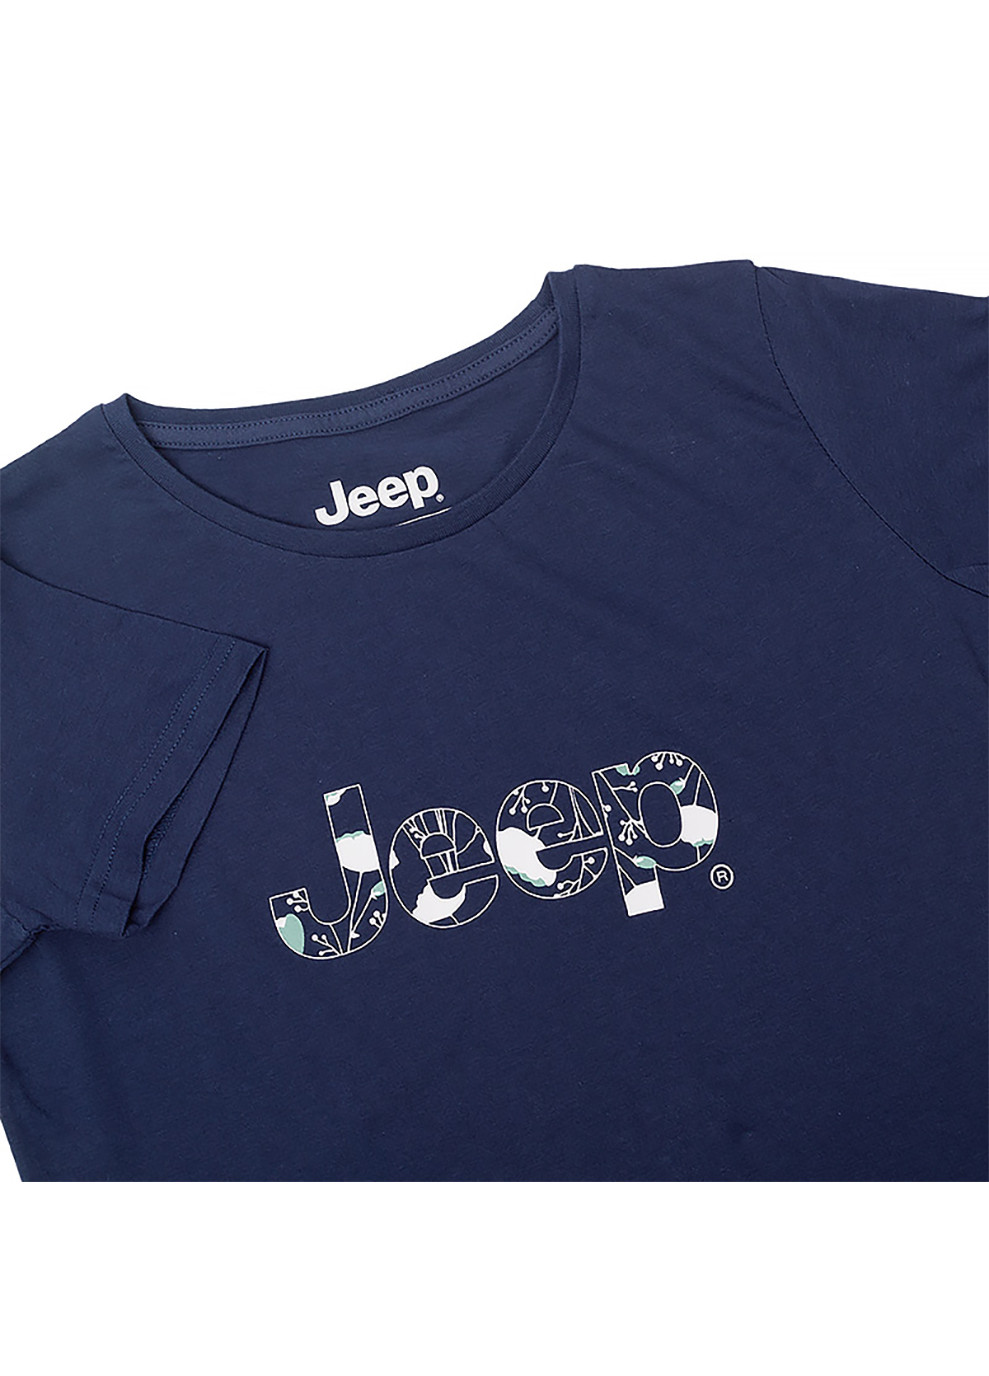 Синяя демисезон женская футболка t-shirt botanical print j22w синий Jeep